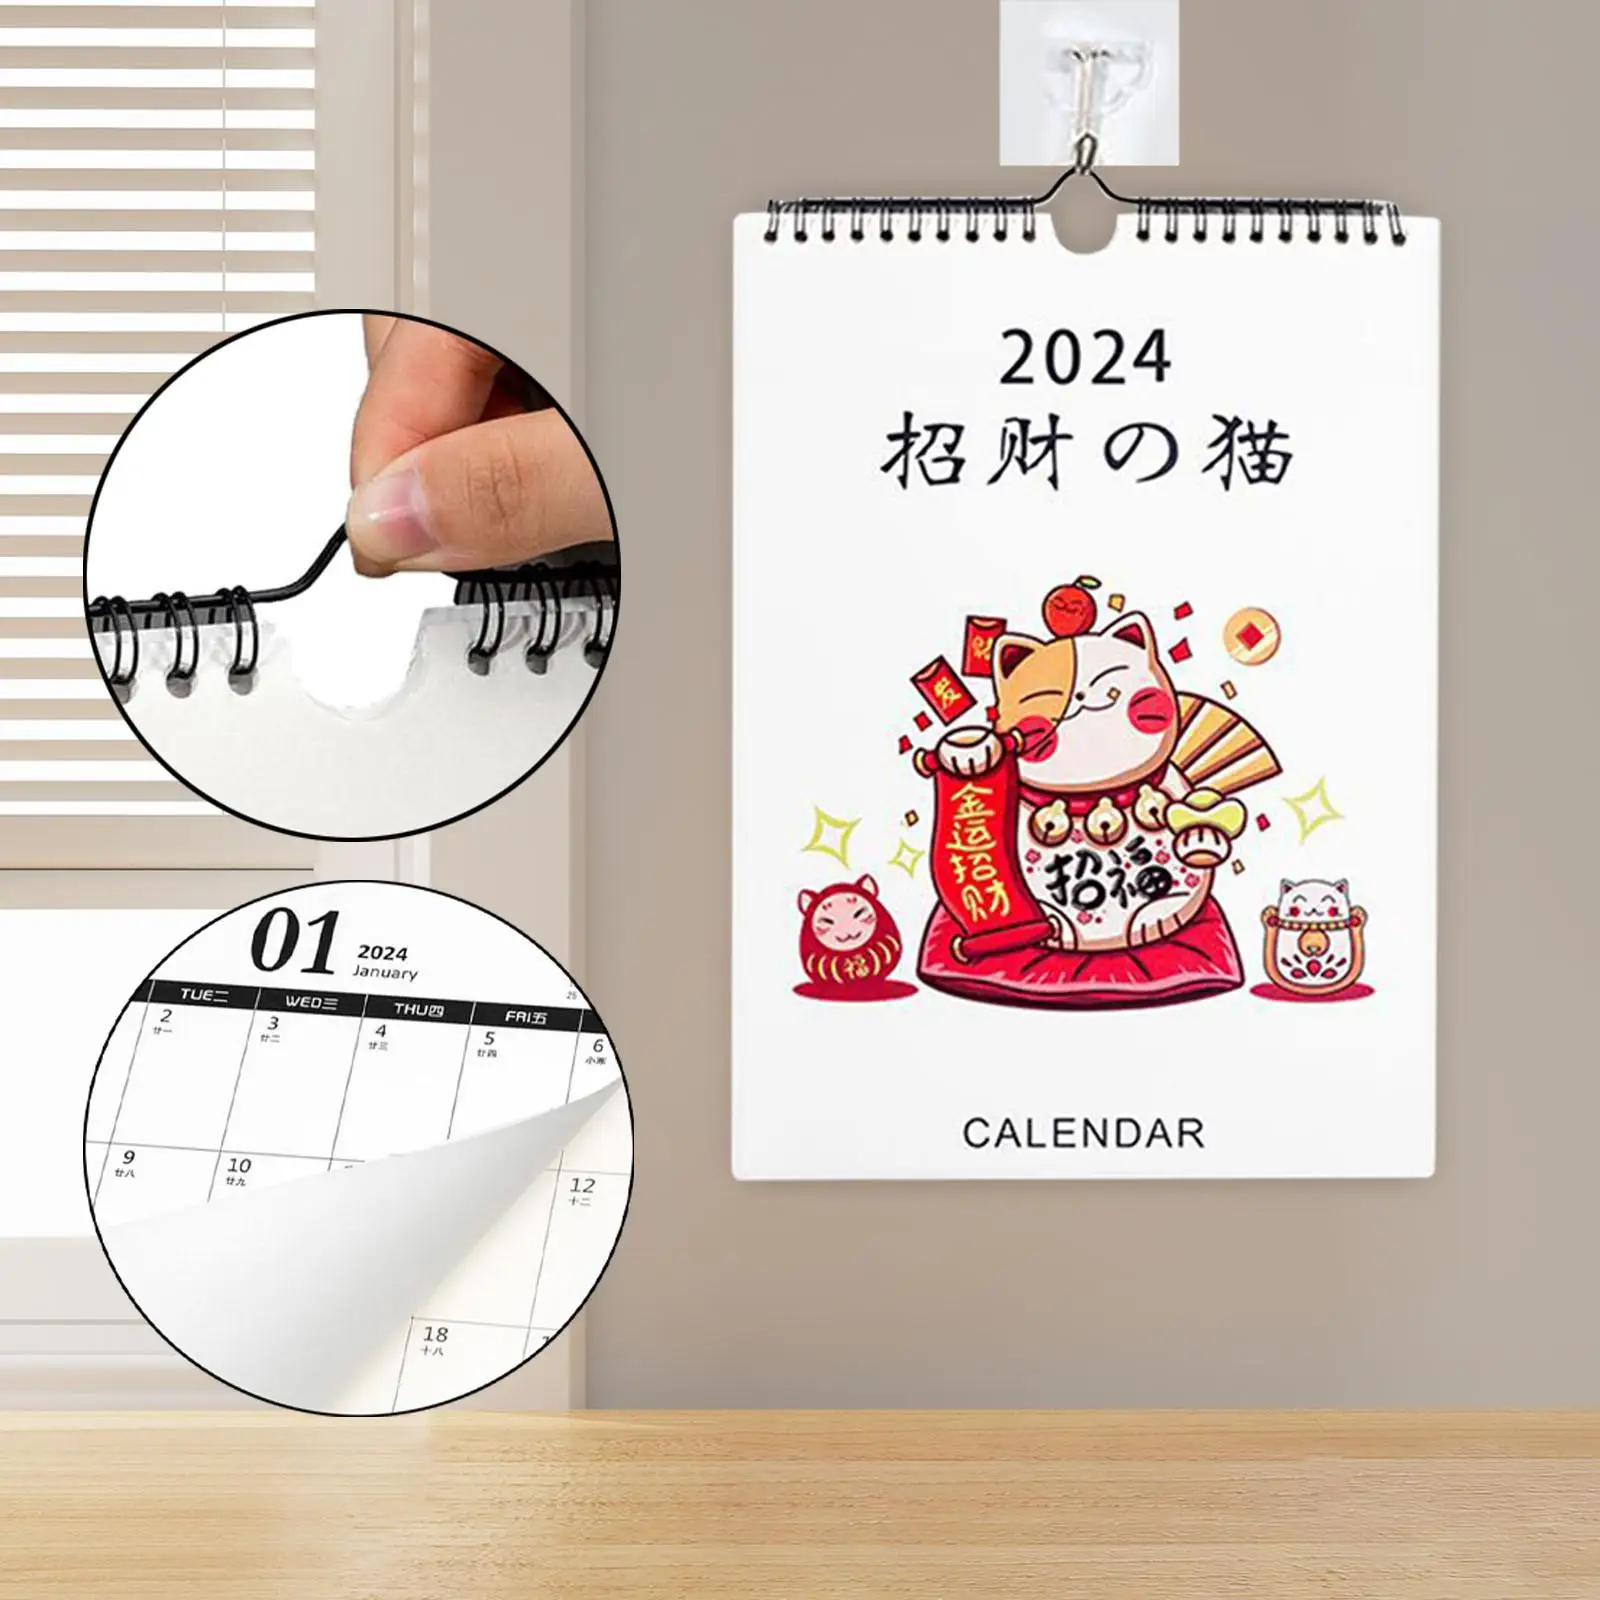 Coil Wall Calendar 2024 Calendar Sept 2023 - DEC 2024, Personal Daily Planner Calendar 16 Month Calendar for New Year Bedroom